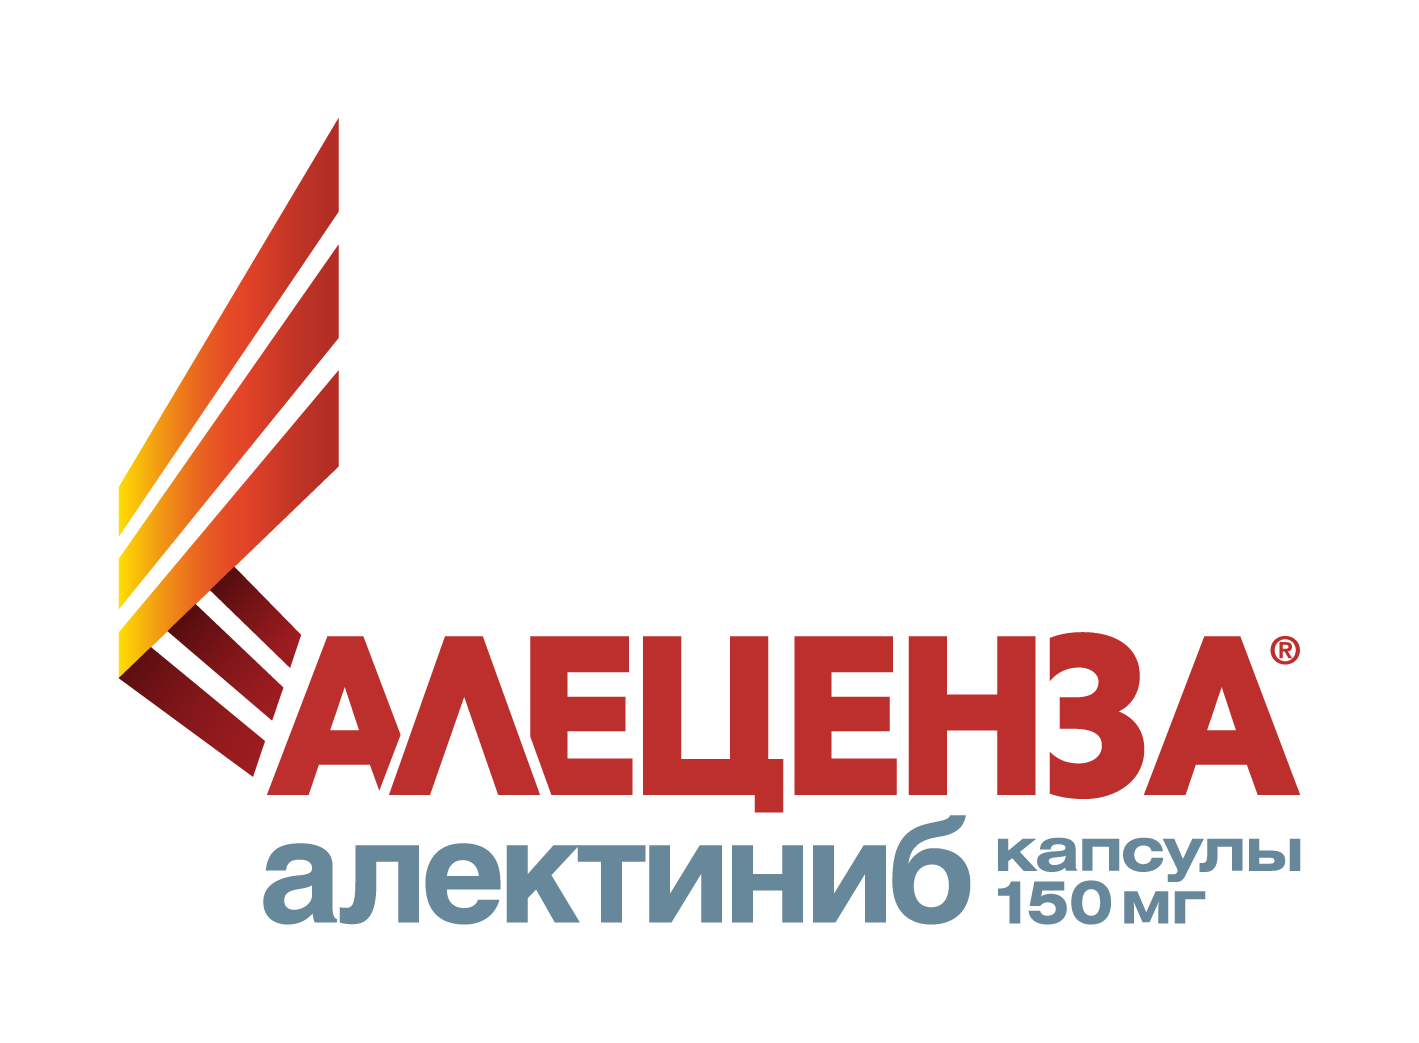 Alecensa / Алеценза (алектиниб) — русский логотип